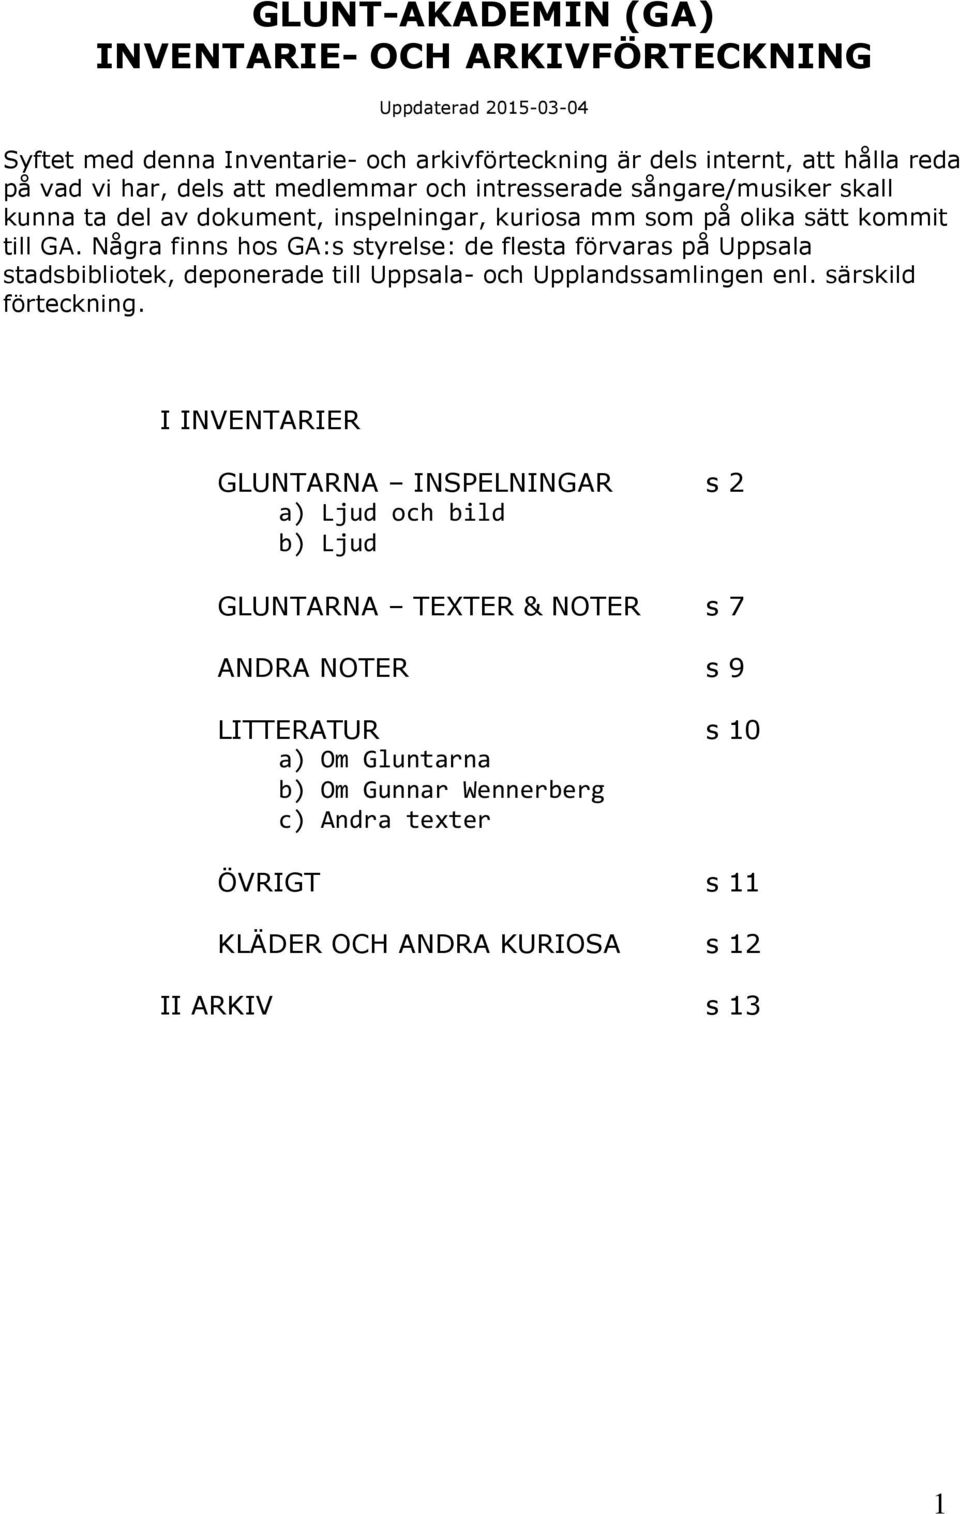 Några finns hos GA:s styrelse: de flesta förvaras på Uppsala stadsbibliotek, deponerade till Uppsala- och Upplandssamlingen enl. särskild förteckning.